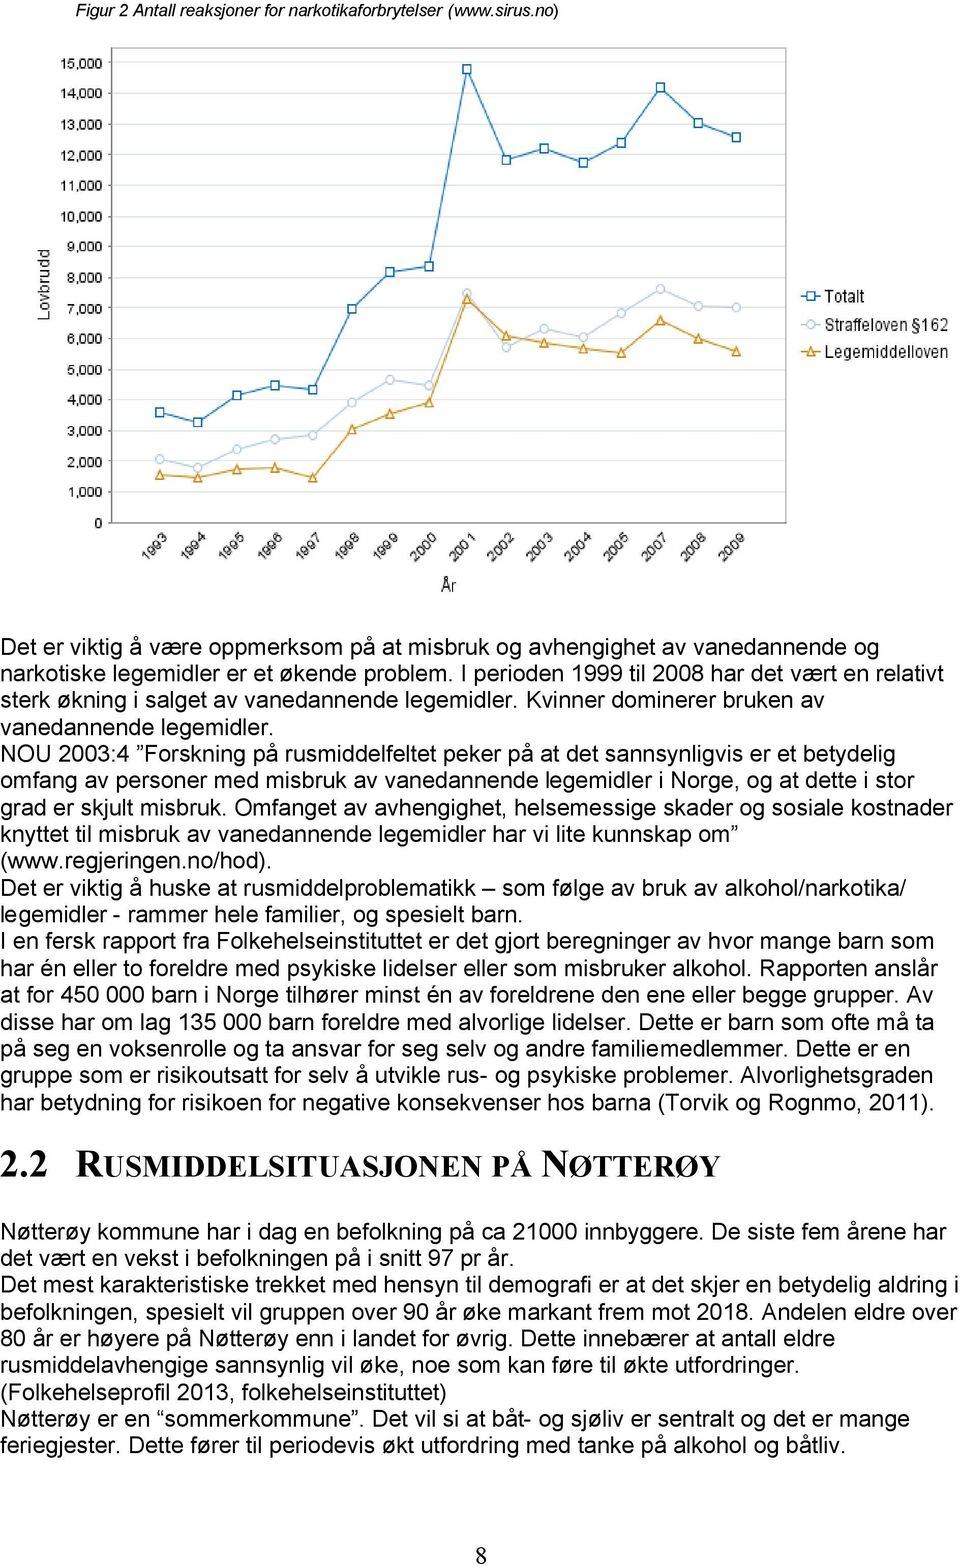 NOU 2003:4 Forskning på rusmiddelfeltet peker på at det sannsynligvis er et betydelig omfang av personer med misbruk av vanedannende legemidler i Norge, og at dette i stor grad er skjult misbruk.